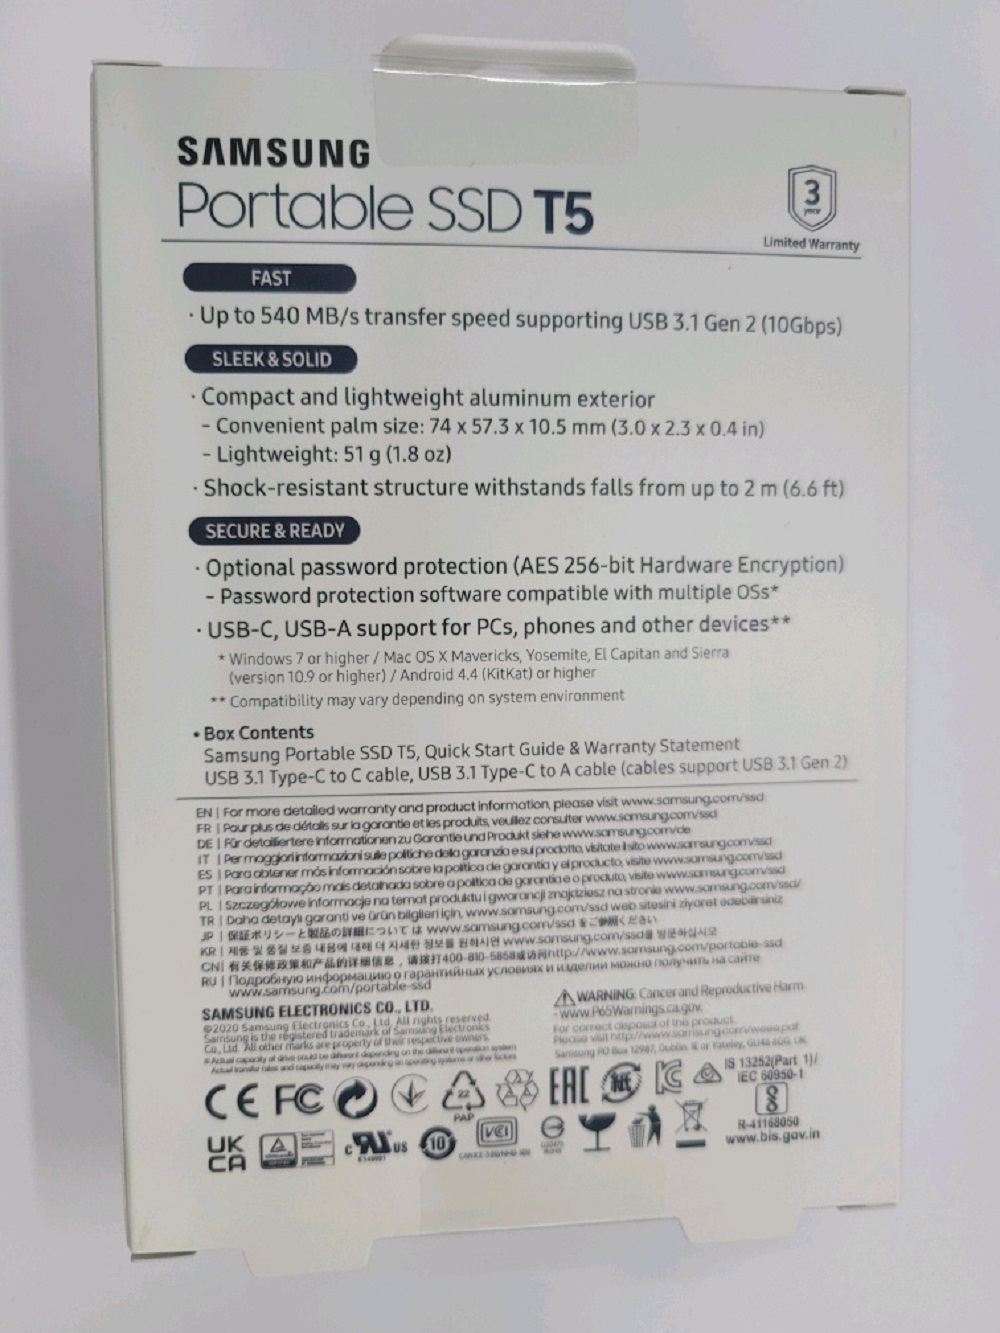 삼성전자 포터블 외장SSD 외장하드 T5 500GB(병행)